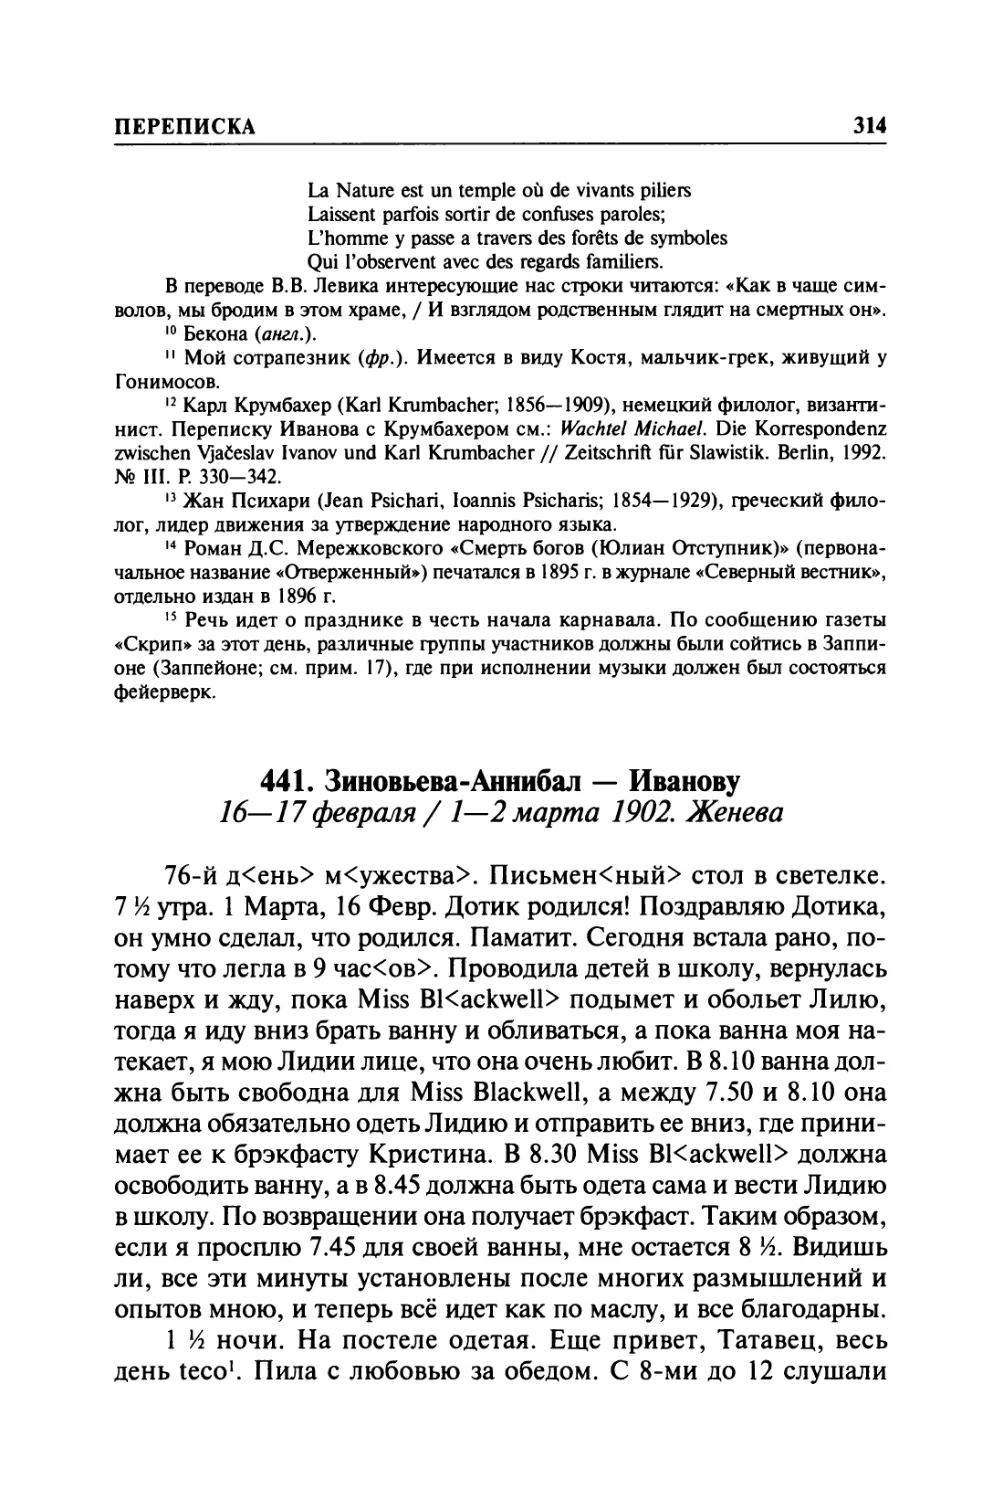 441. Зиновьева-Аннибал — Иванову. 16—17 февраля / 1—2 марта 1902. Женева